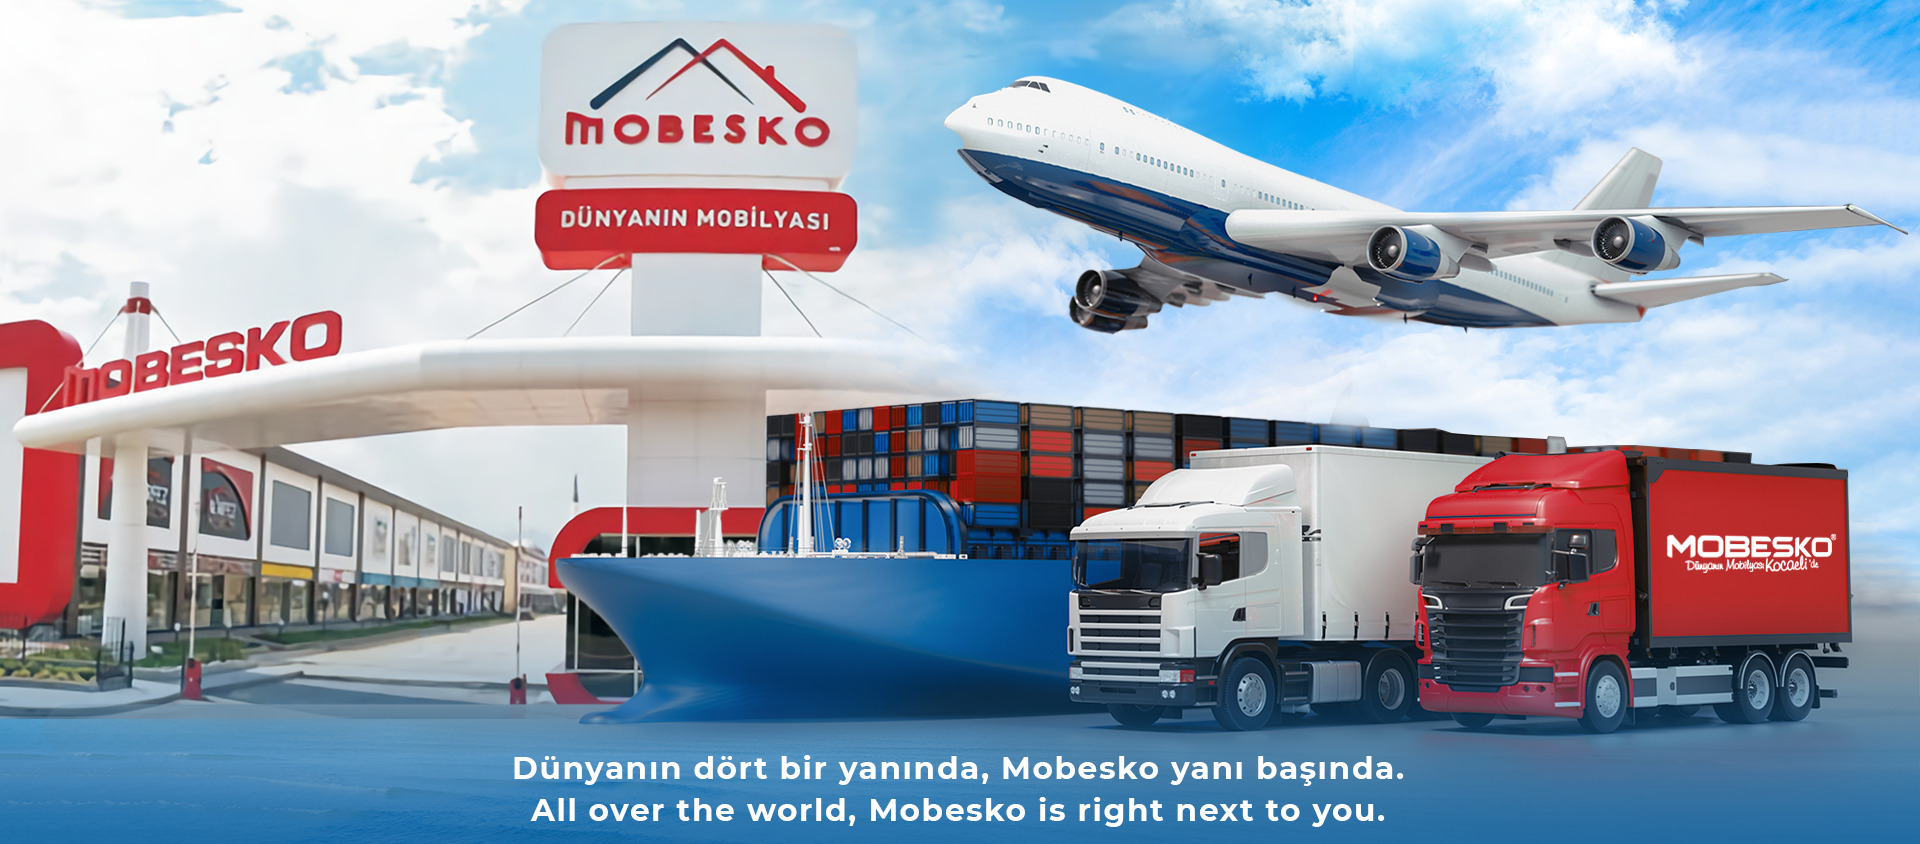 MOBESKO - Dünyanın Mobilyası